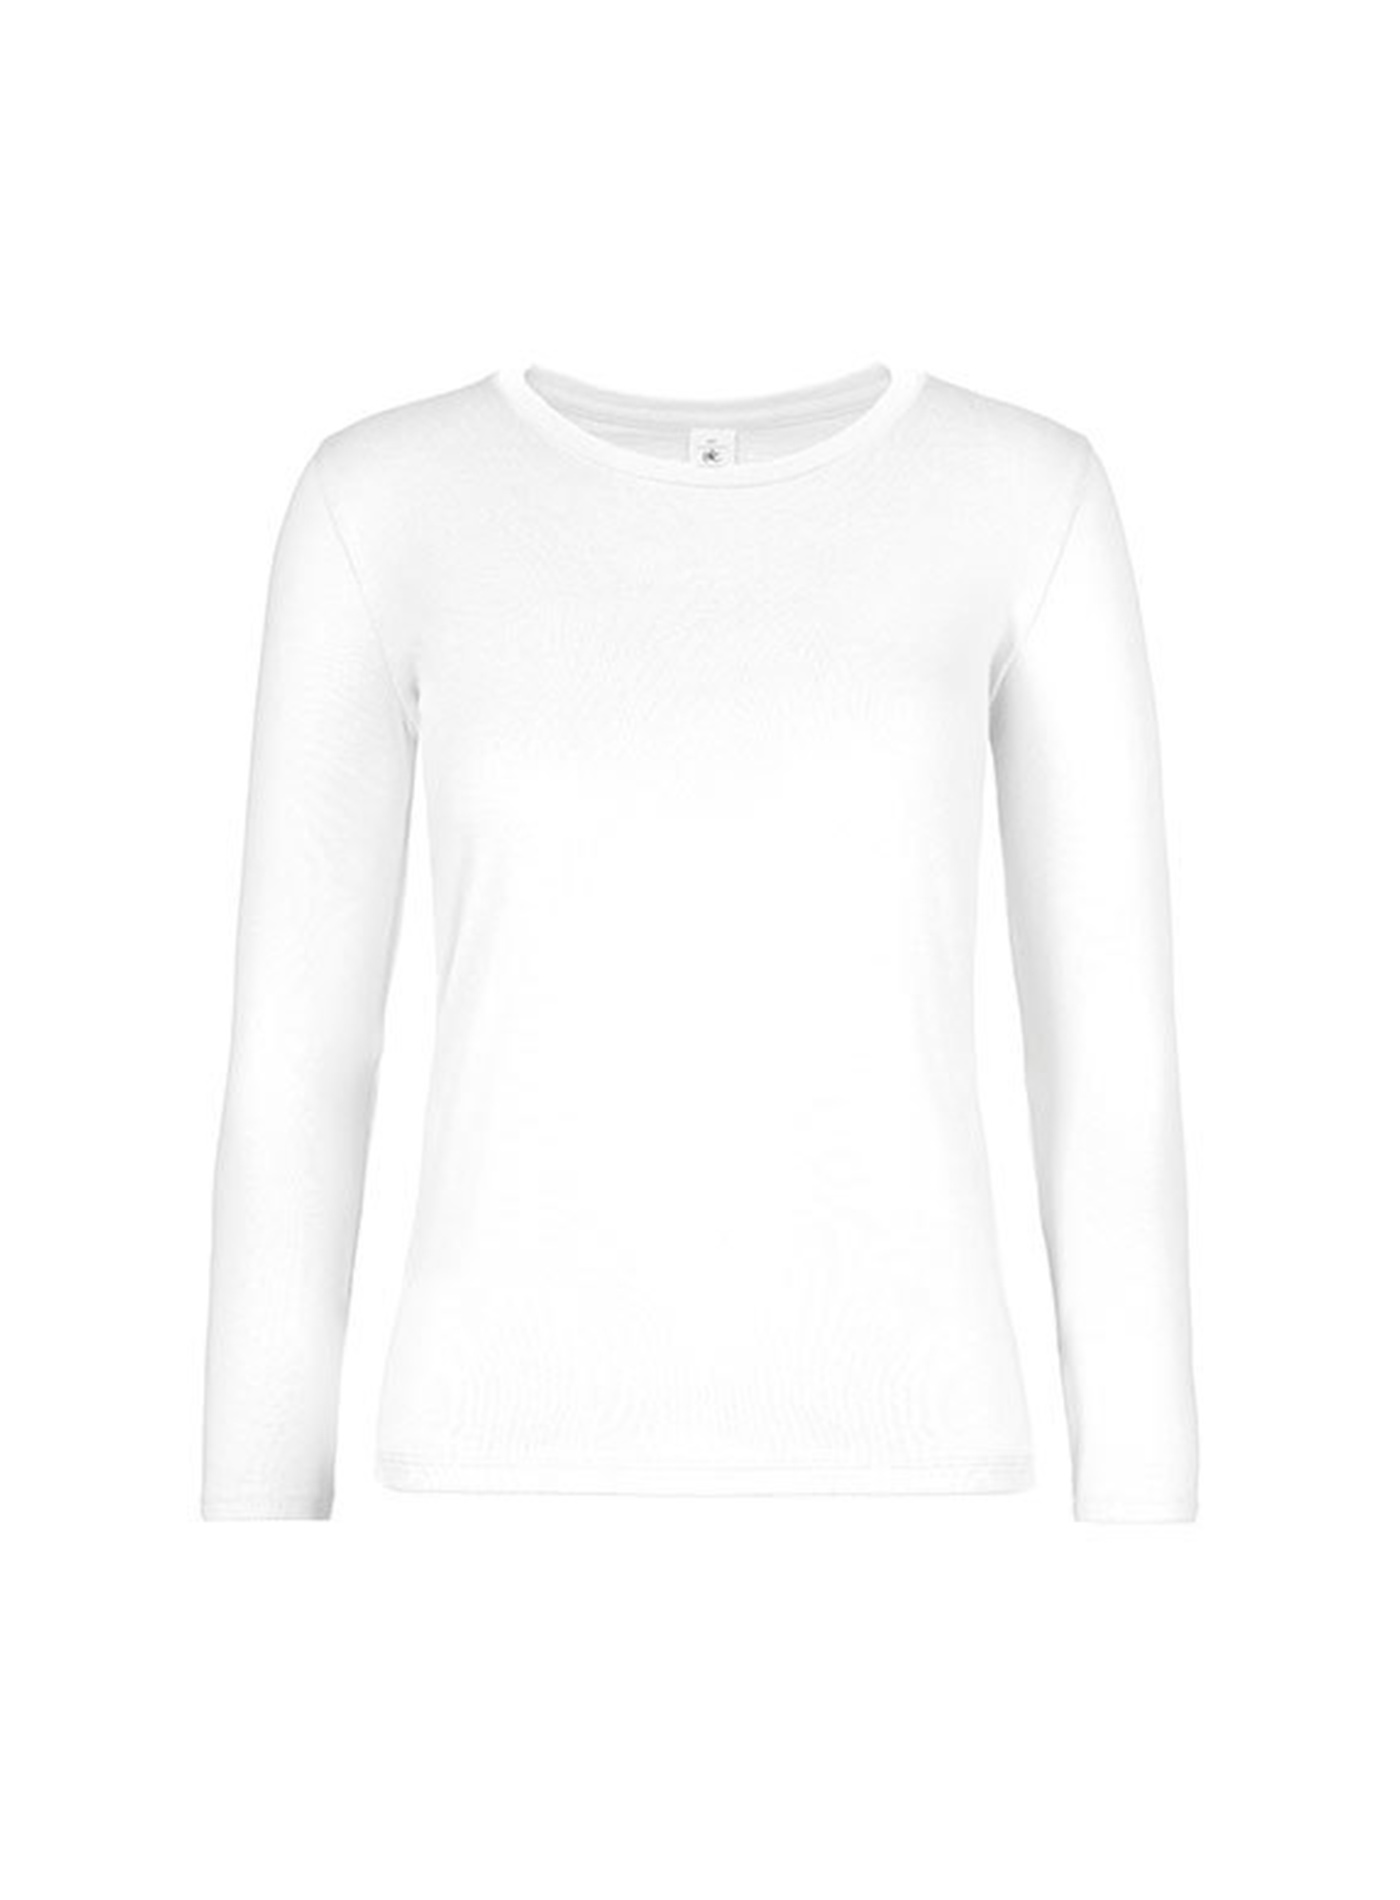 Dámské tričko s dlouhým rukávem B&C Collection - Bílá XS